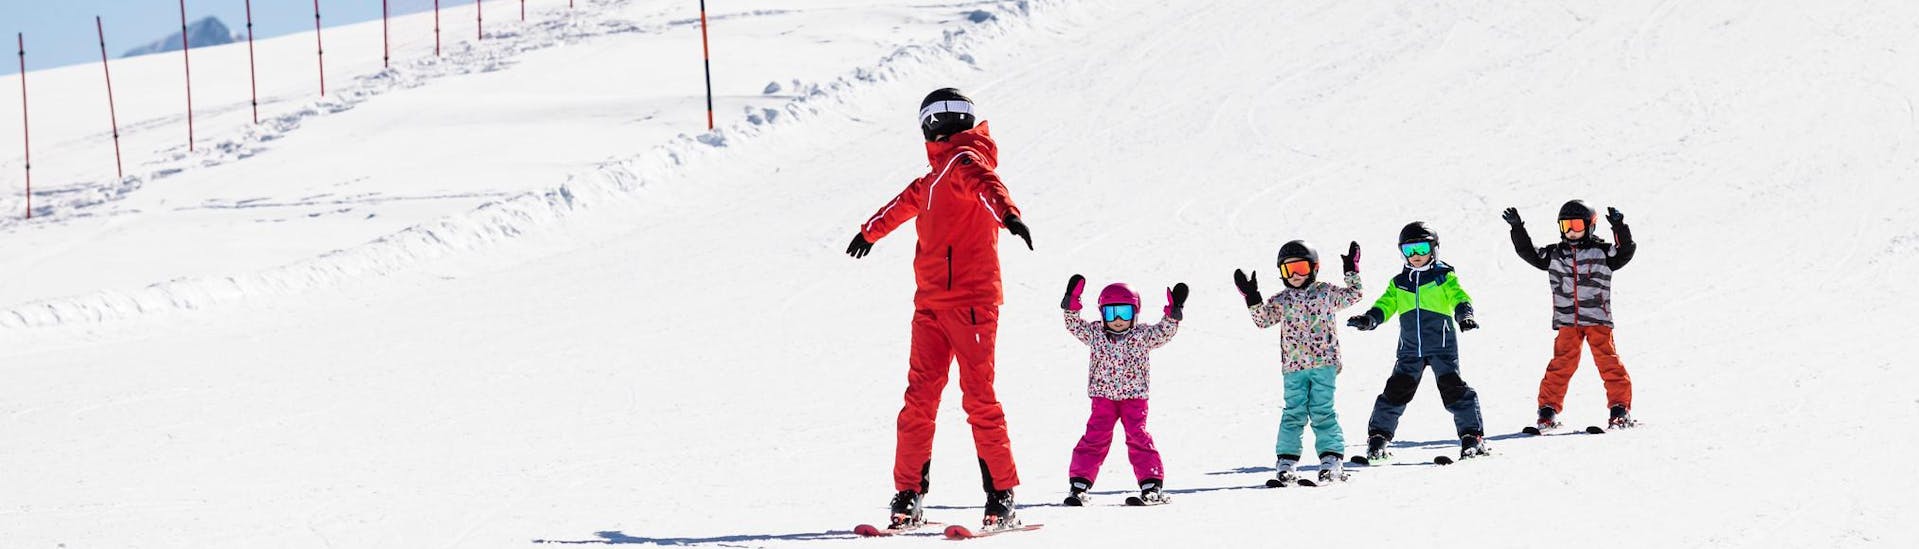 Skilehrer und Kinder fahren während eines Skikurses die Pisten hinunter.